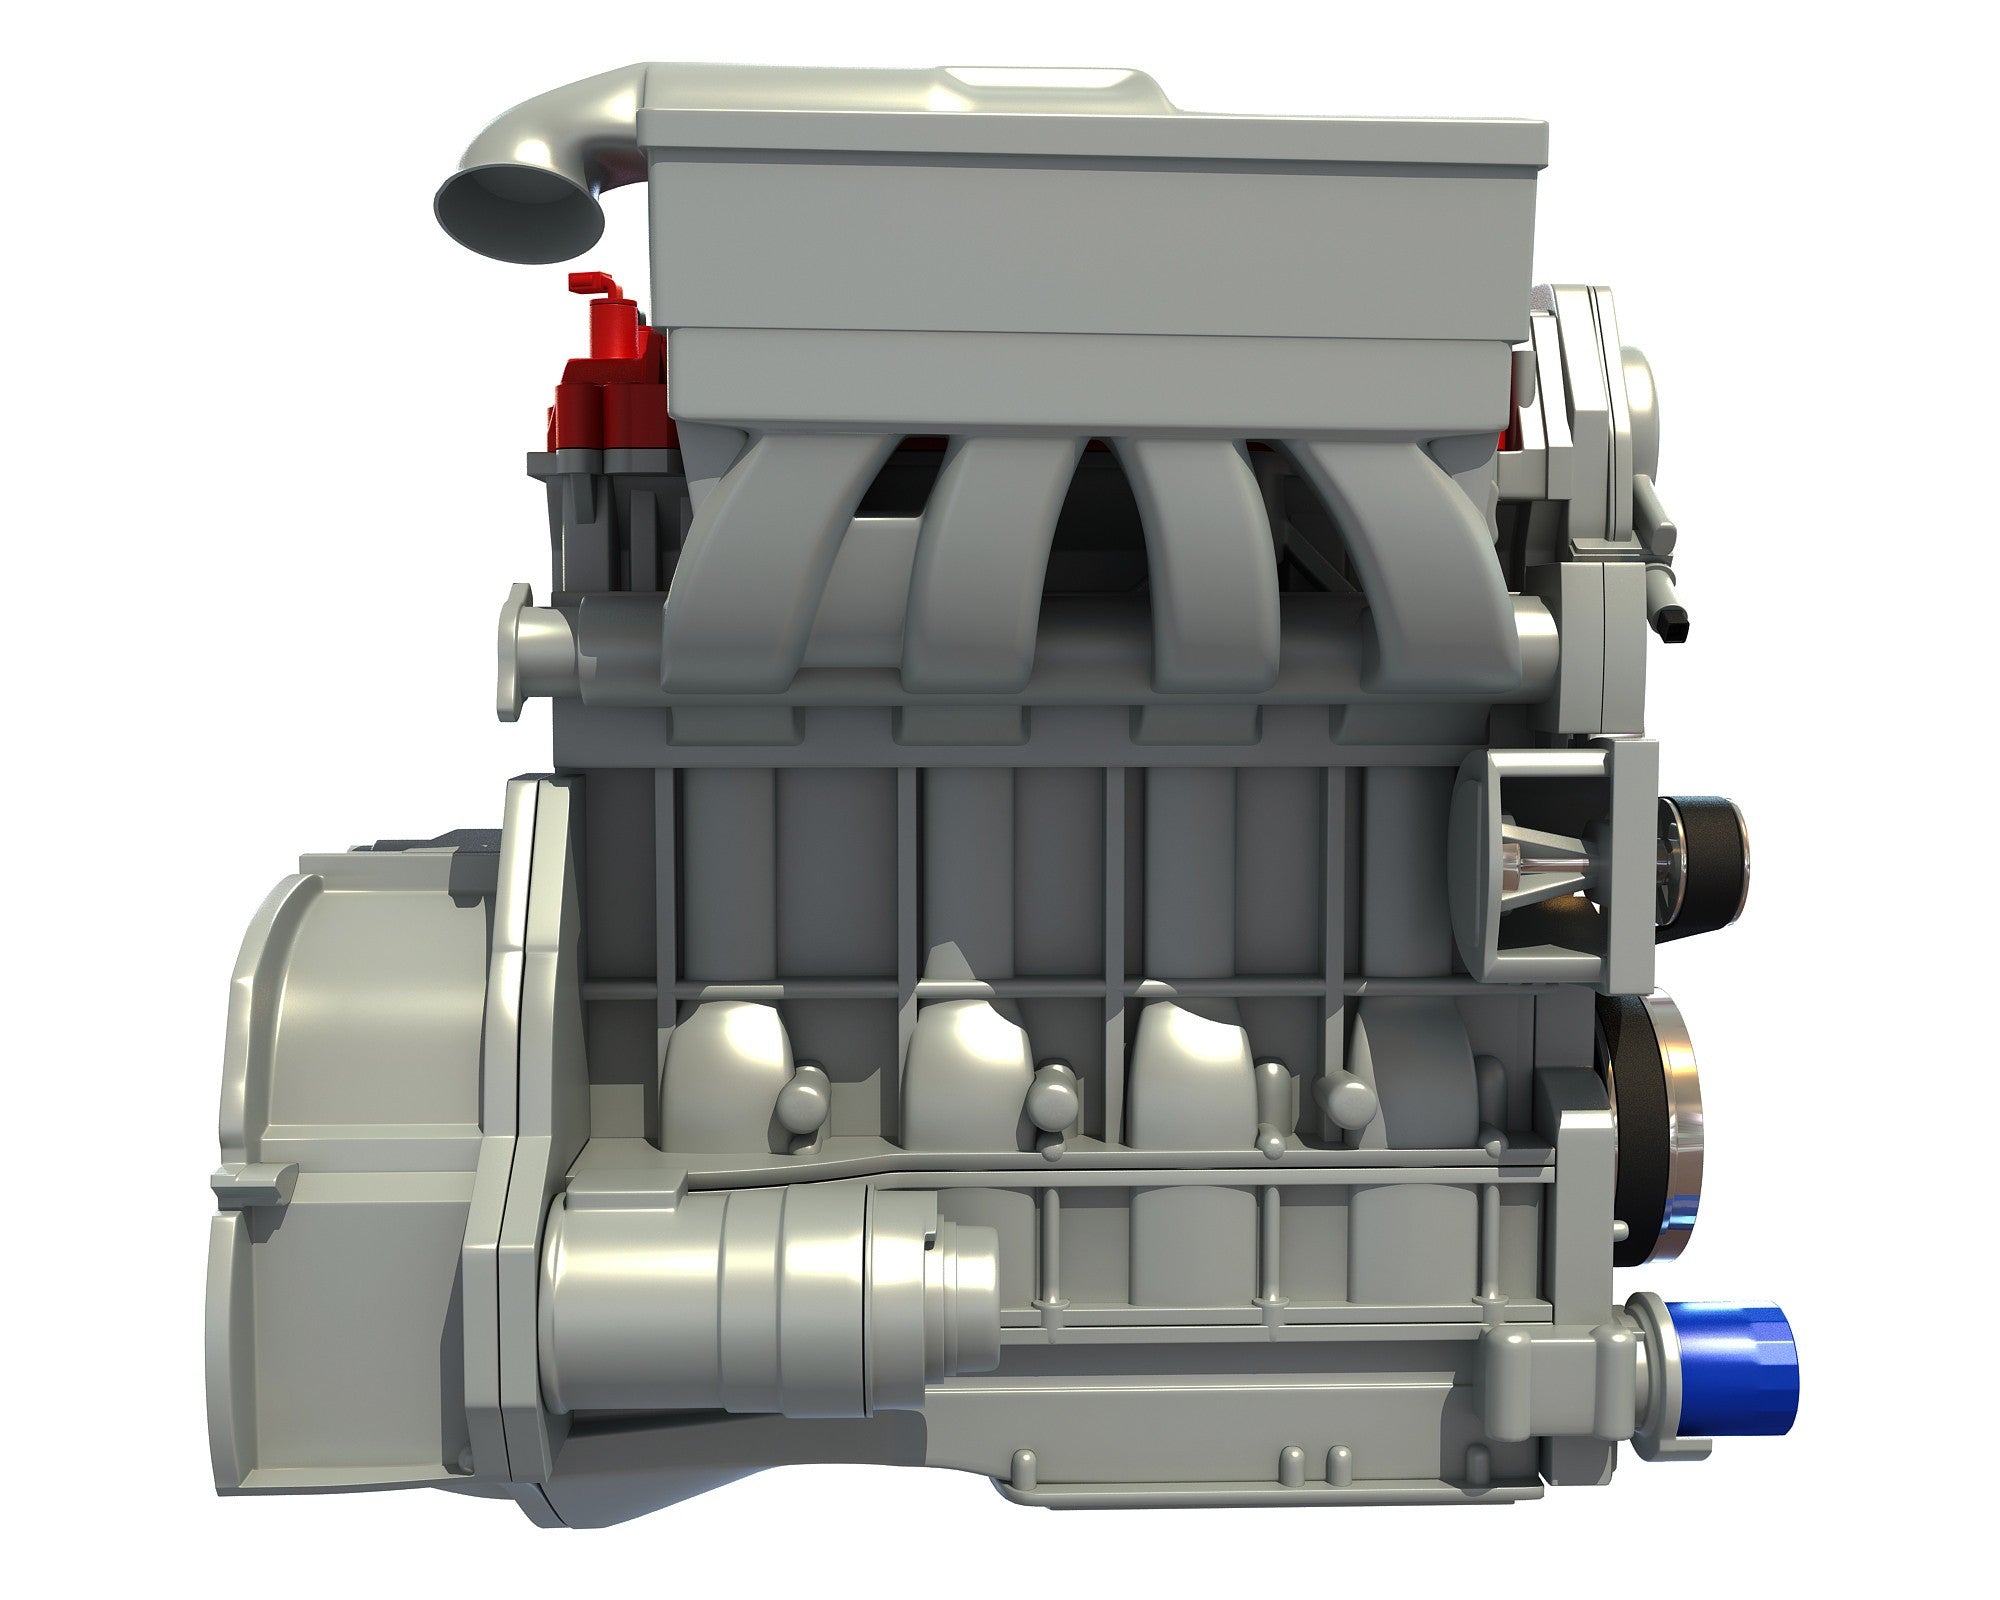 4 Cylinder Engine Model